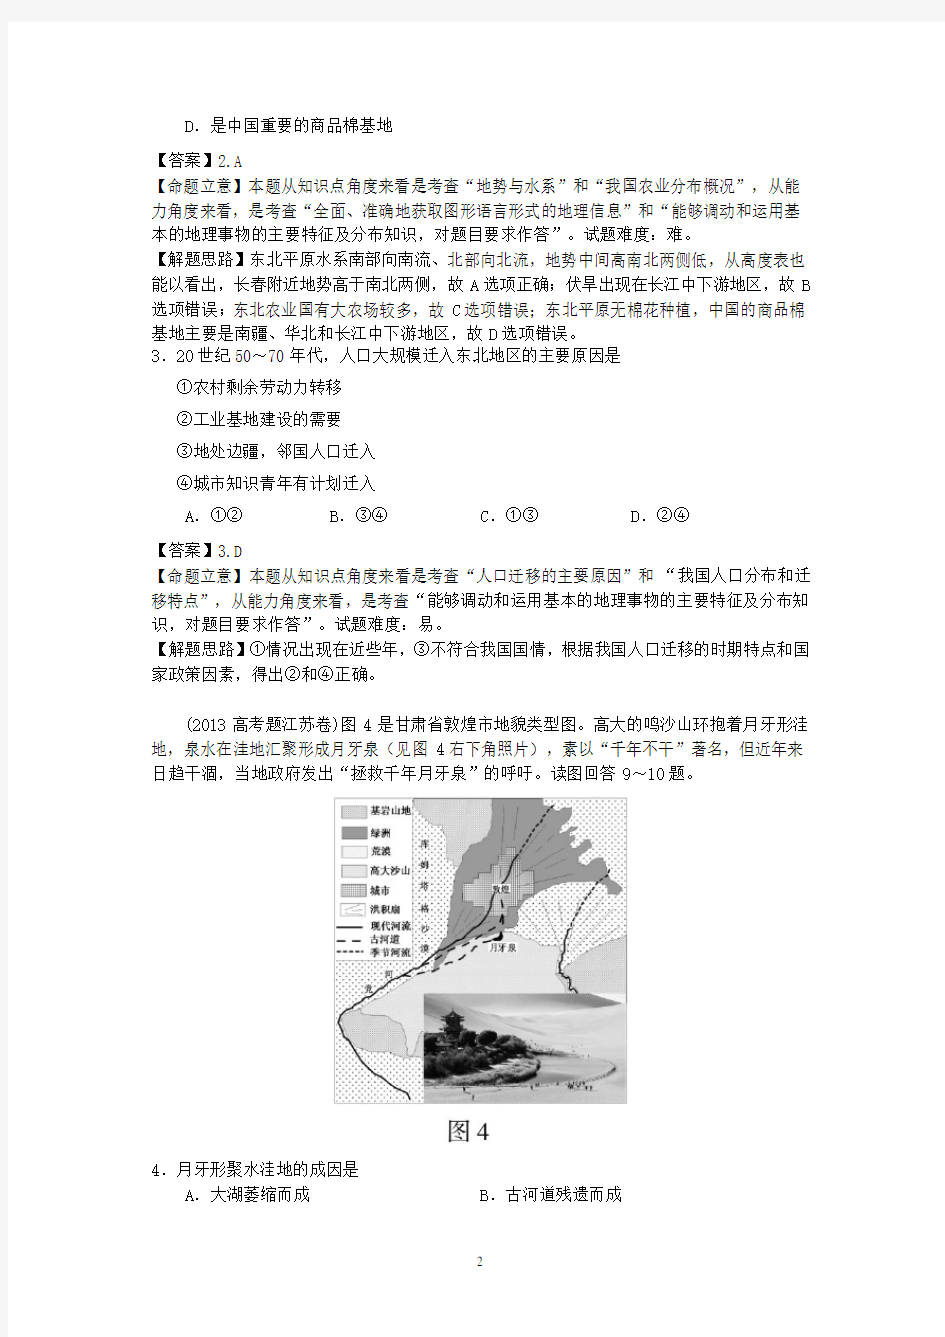 2013年高考真题地理学科分类汇编20-中国地理